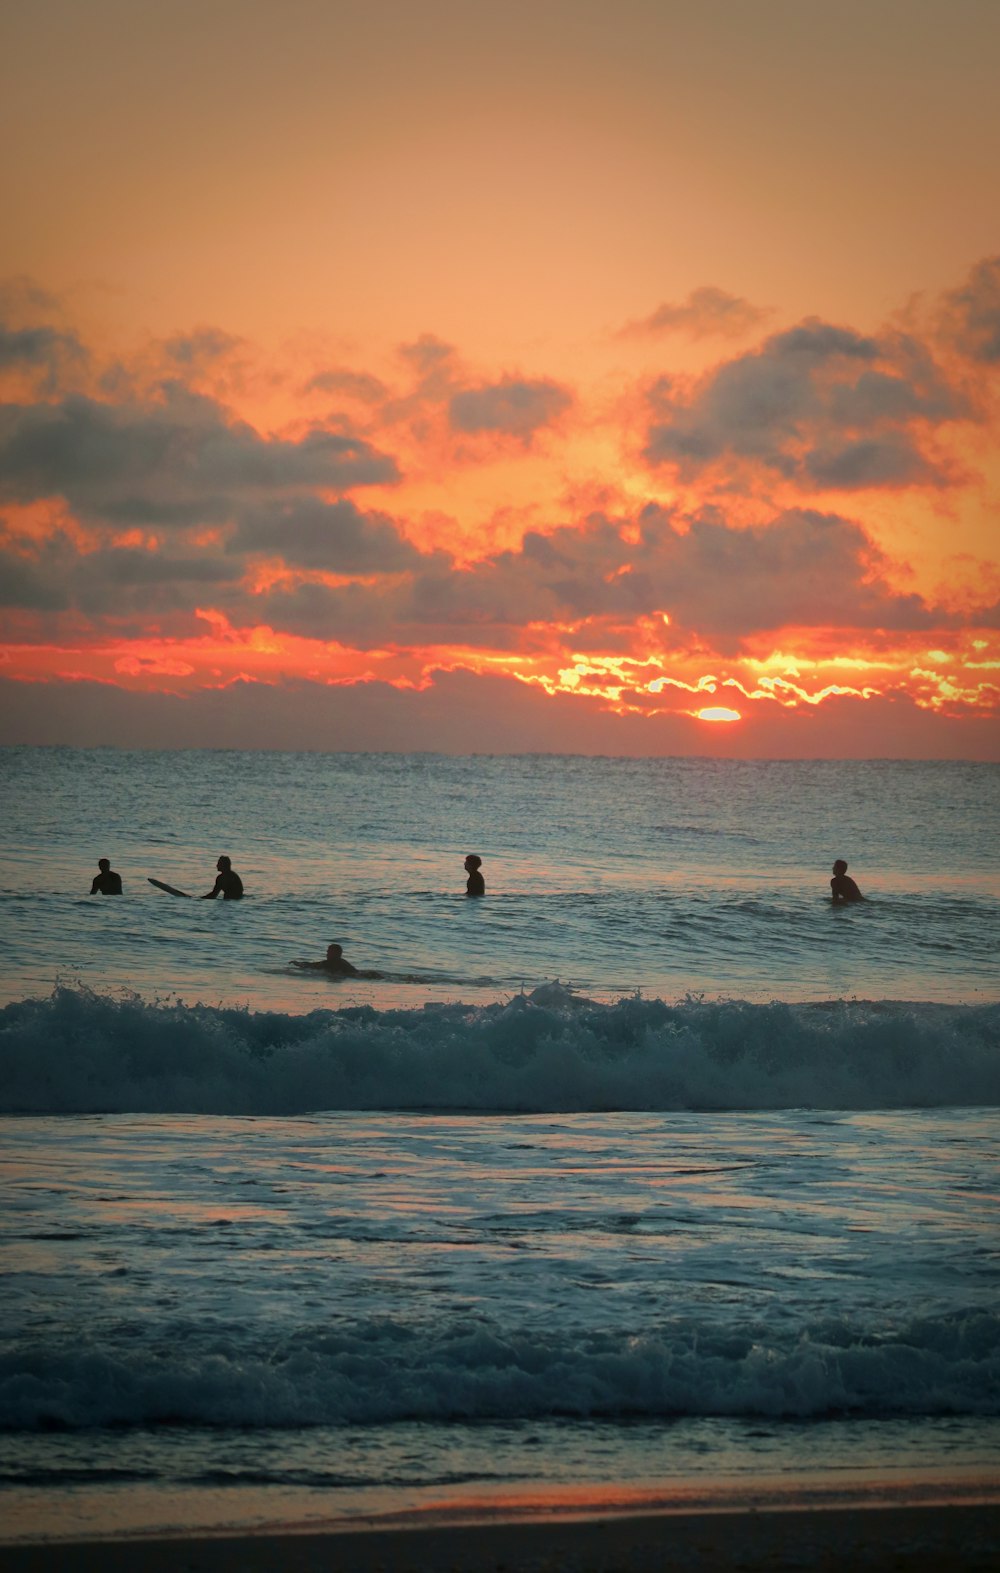 Un grupo de personas montando tablas de surf en la parte superior de una ola